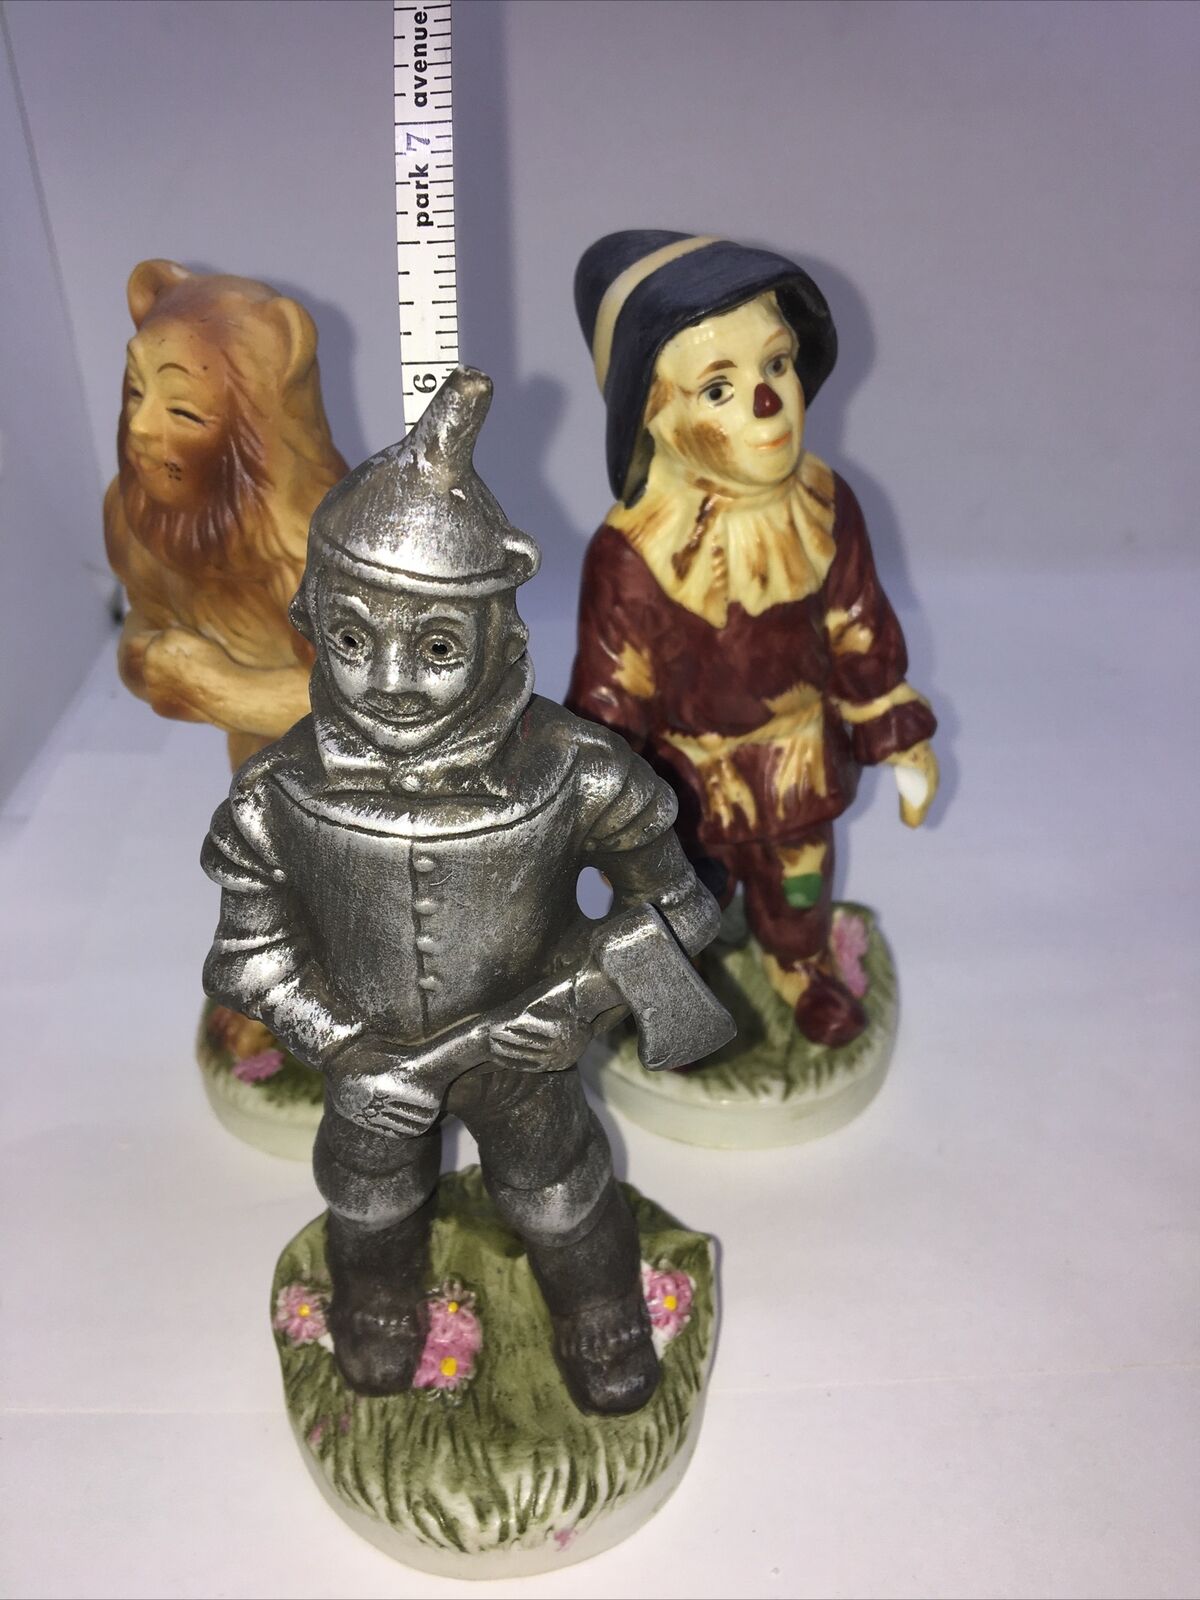 Wizard Of Oz 3 Piece Porcelain Figurine Set (rare)vtg Mgm 1974 Seymour Mann Inc.